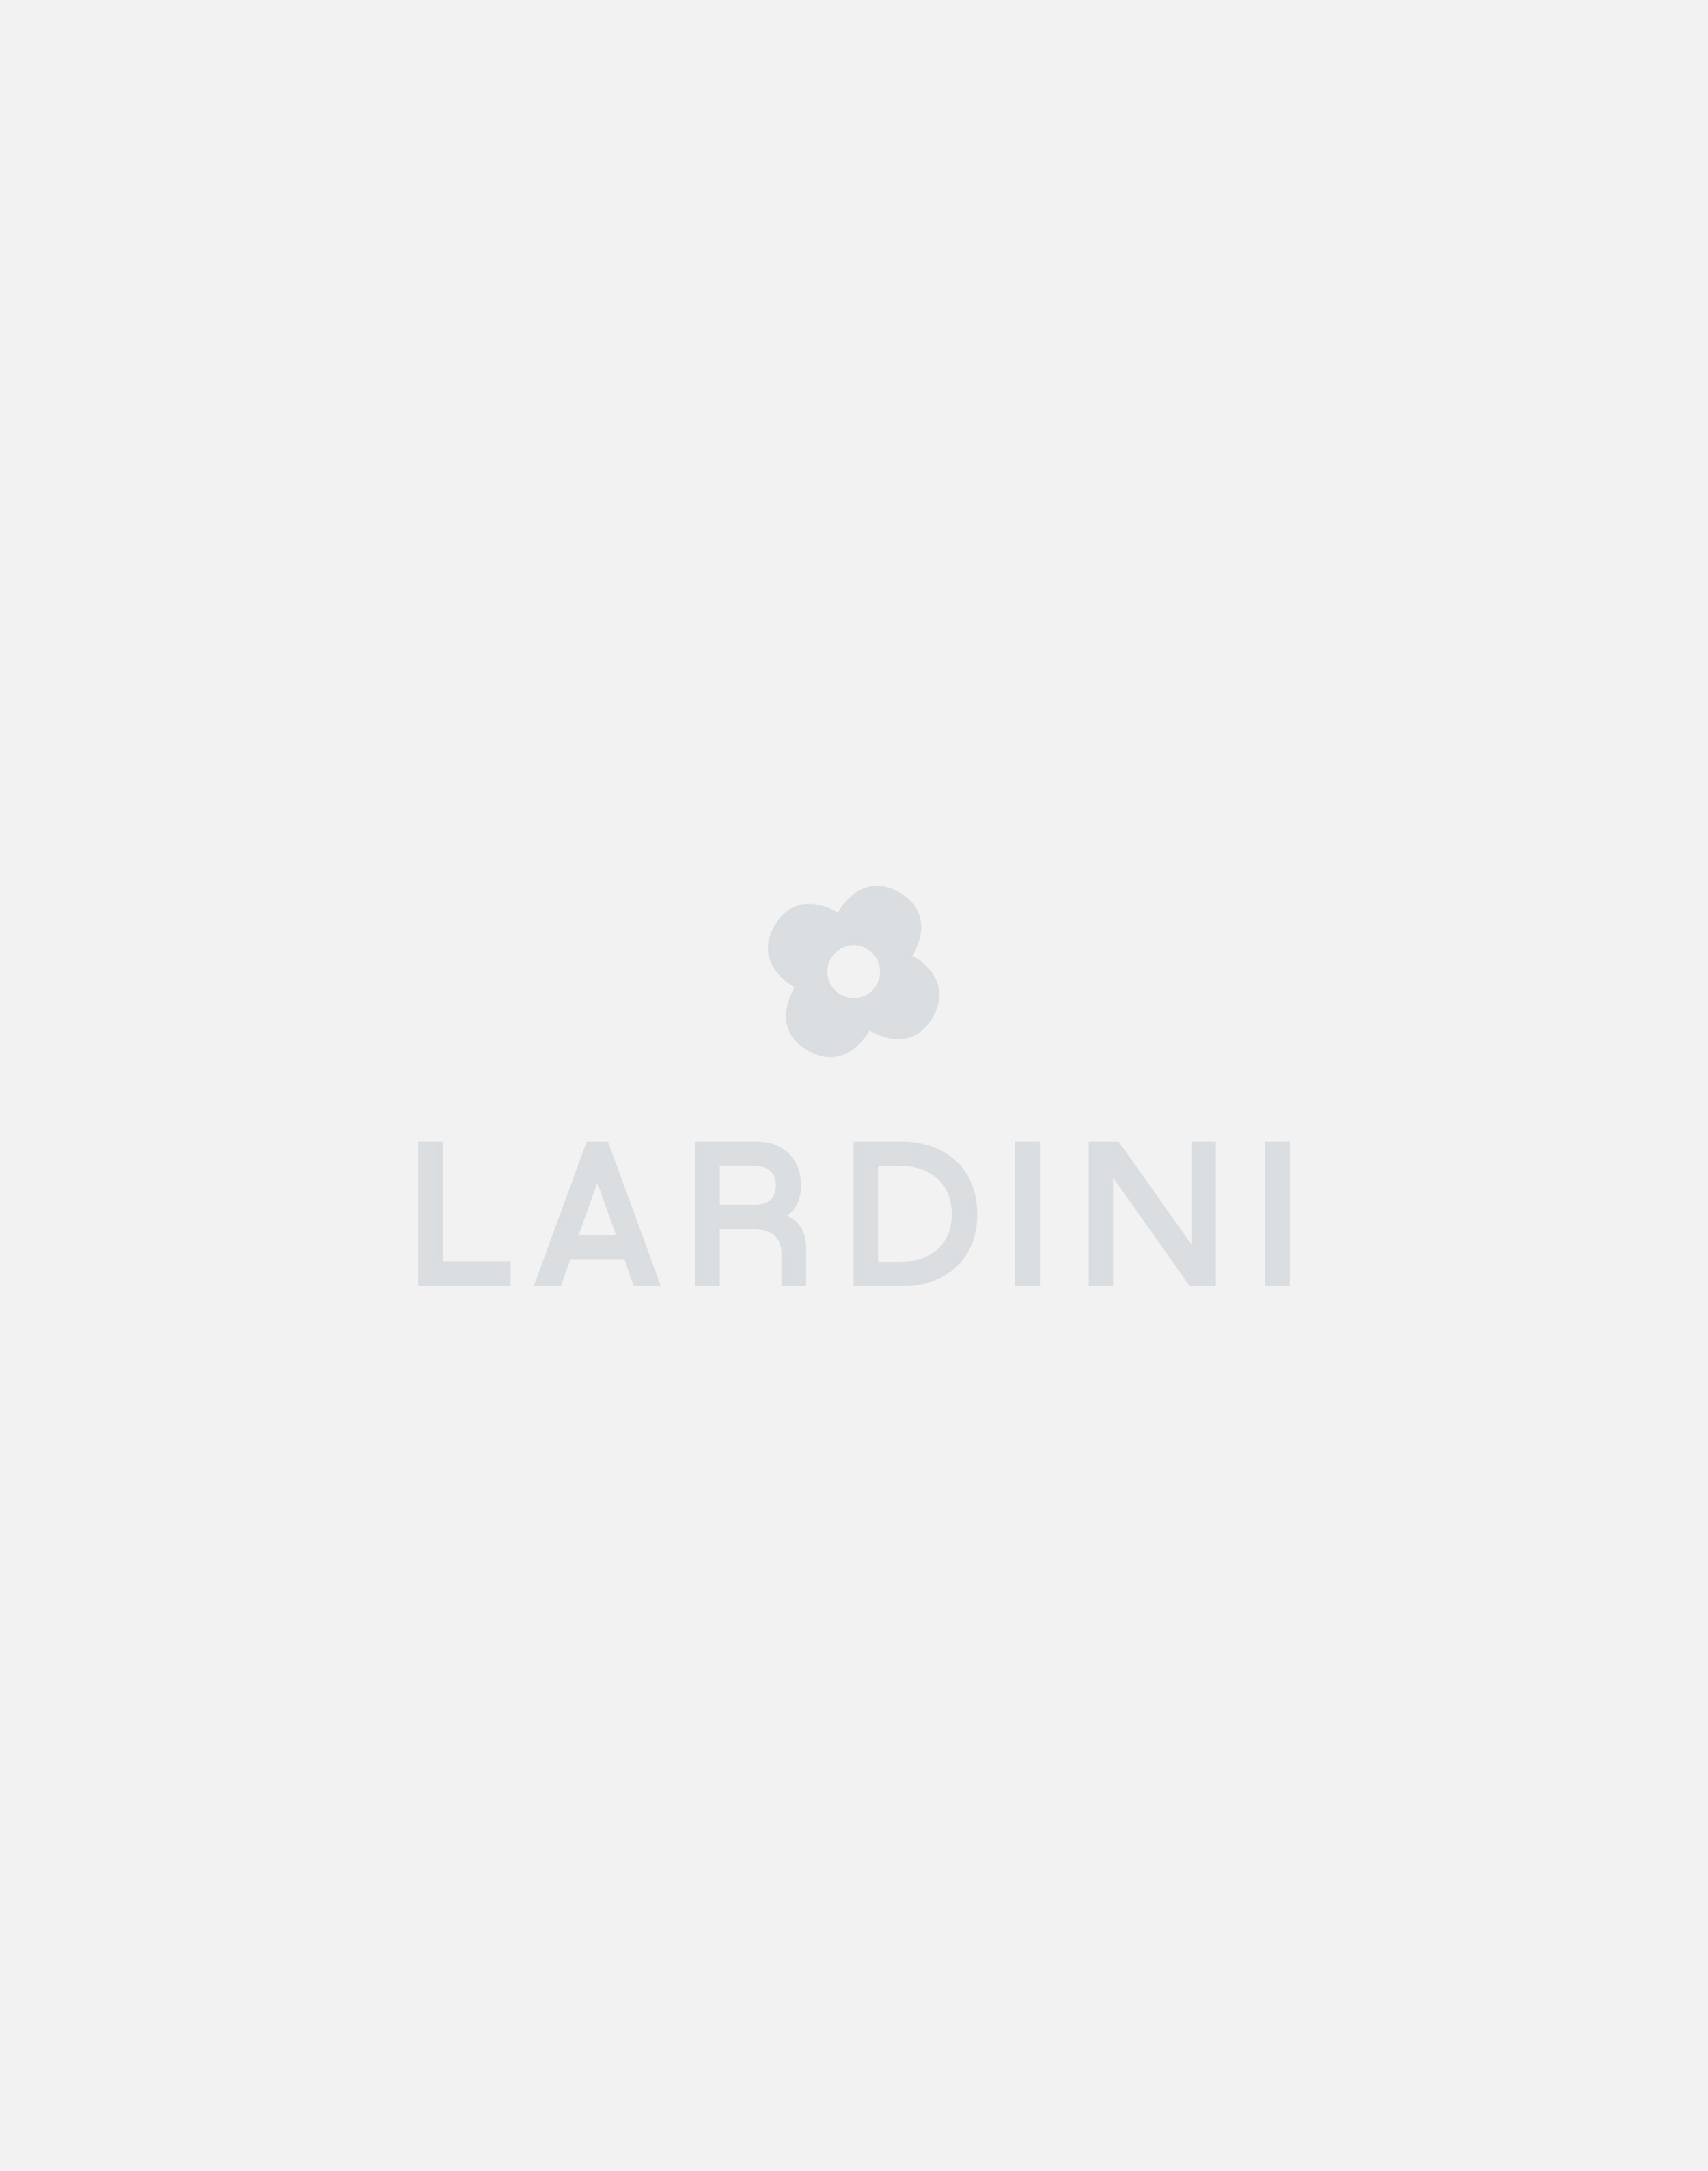 Leather slip-on sneaker - Lardini by Yosuke Aizawa 4